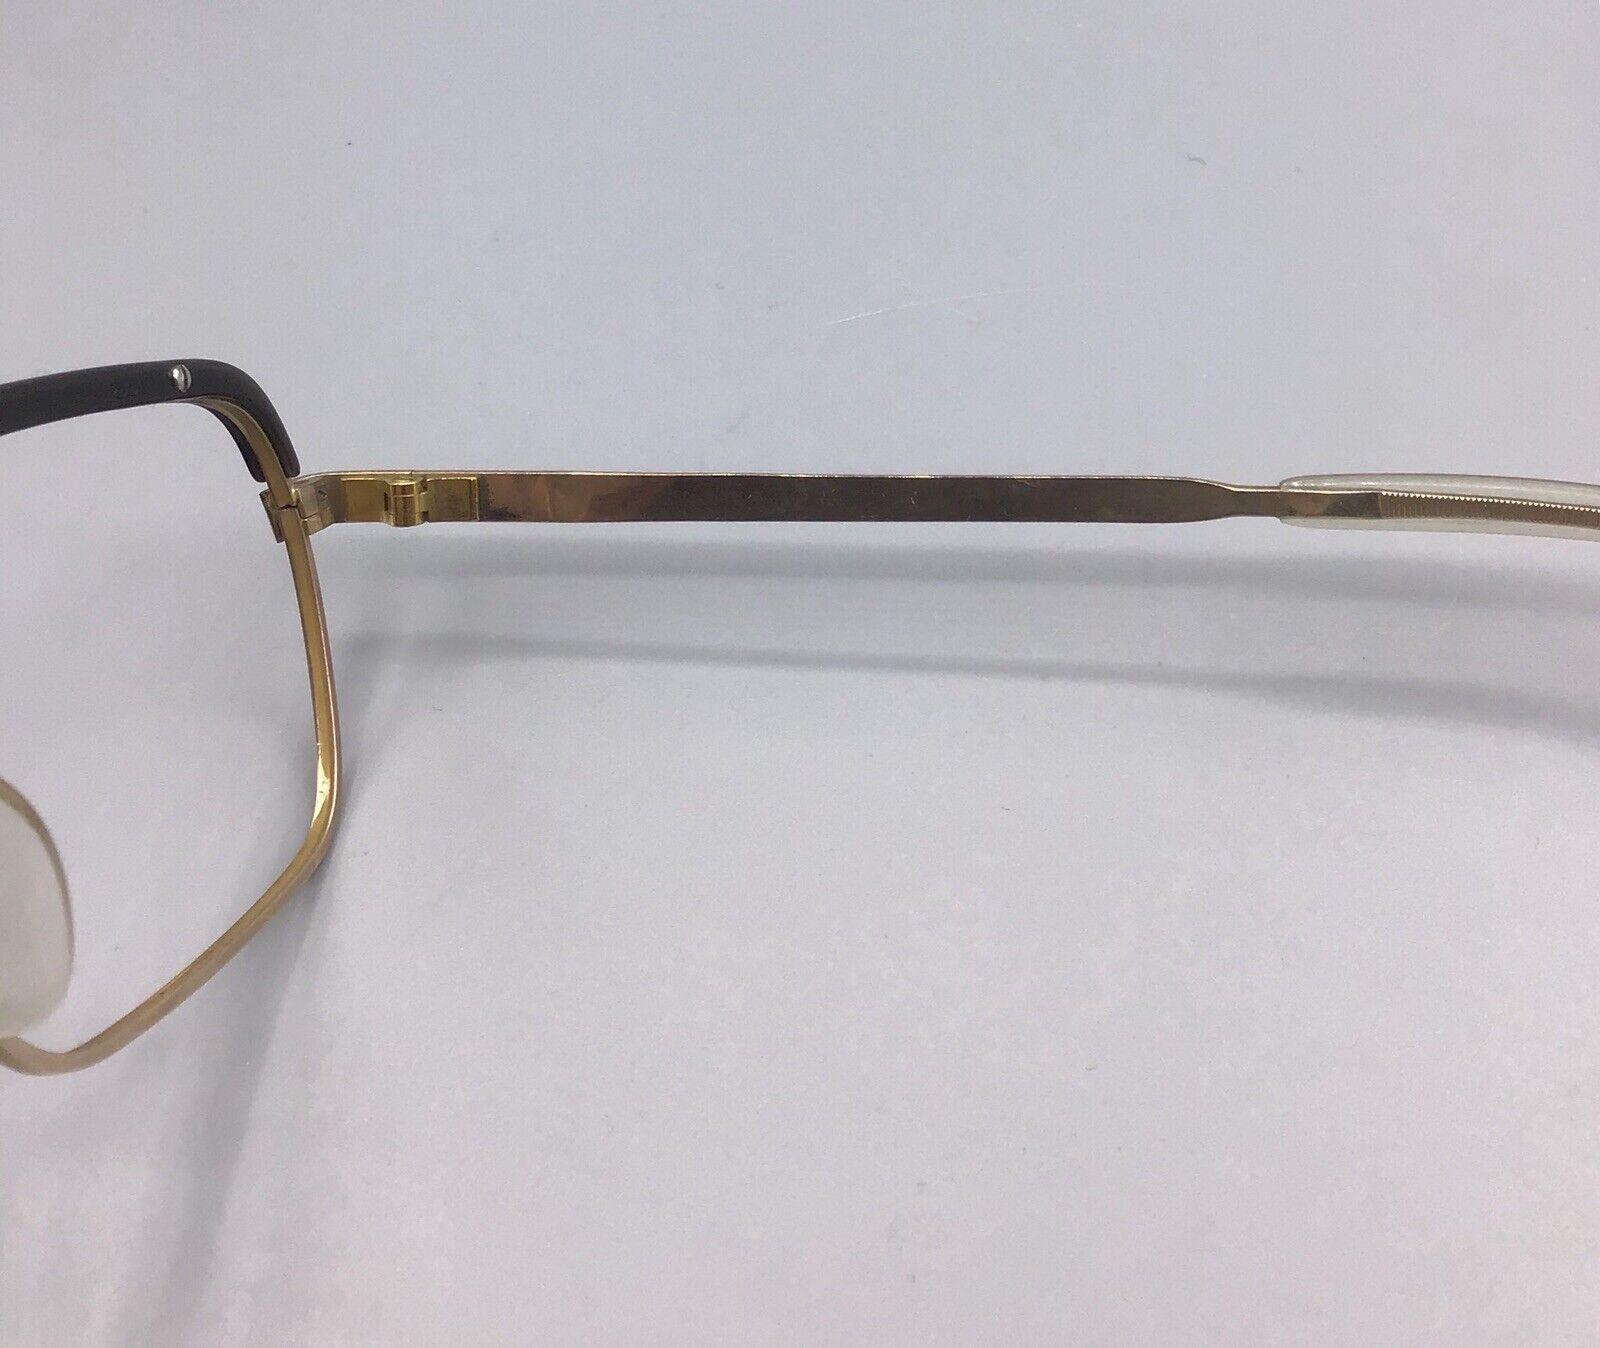 Rodenstock occhiale vintage frame eyeglasses 1/10 12k correl brillen oro gold